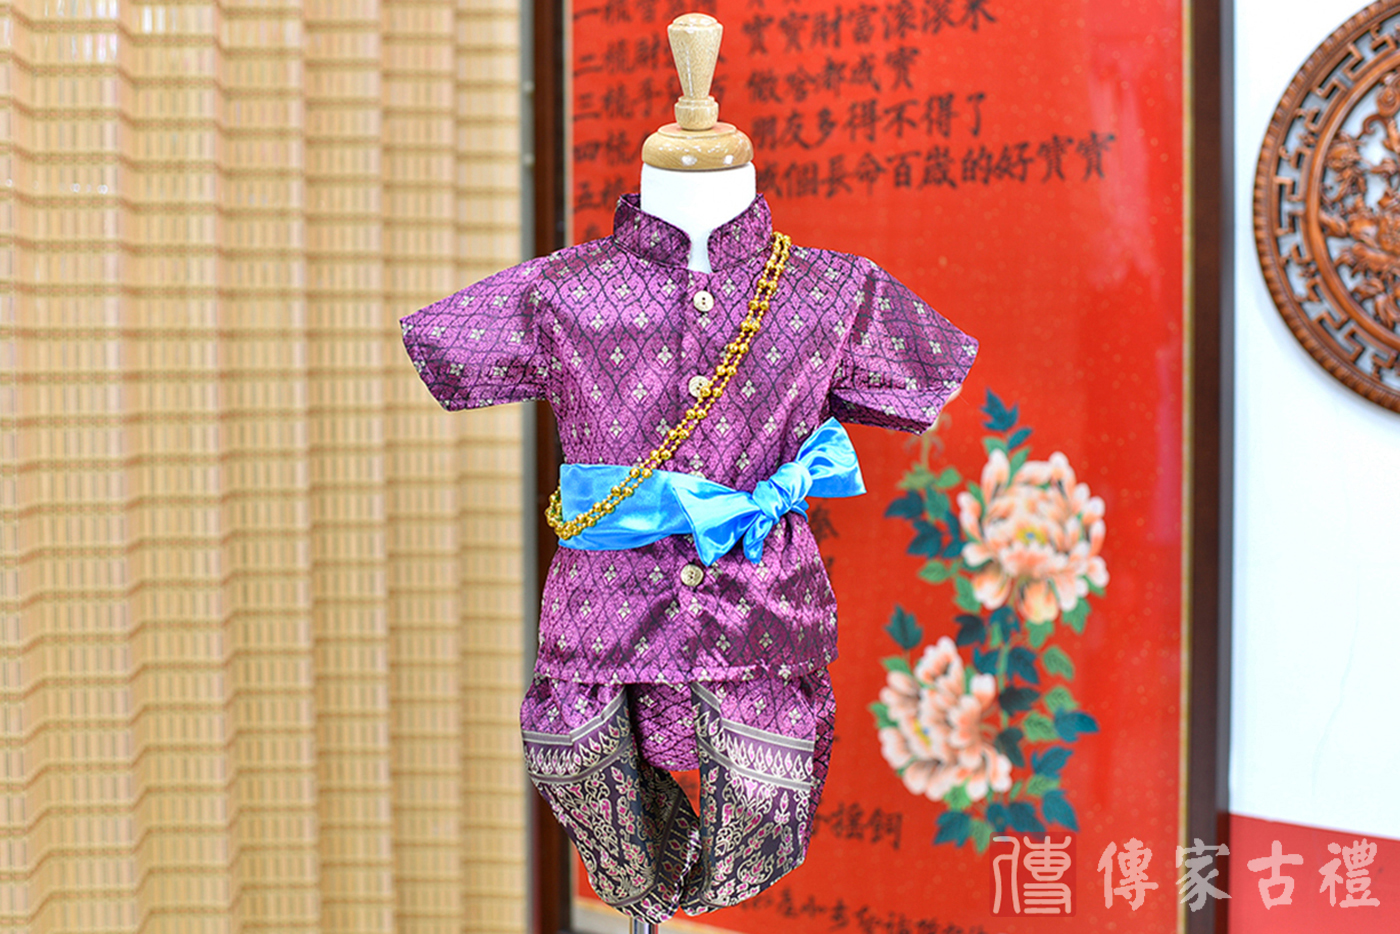 2024-02-25小孩皇室泰服古裝禮服。深紫色金線織花的上衣搭配相配色泰絲褲裝的泰式古裝禮服。照片集